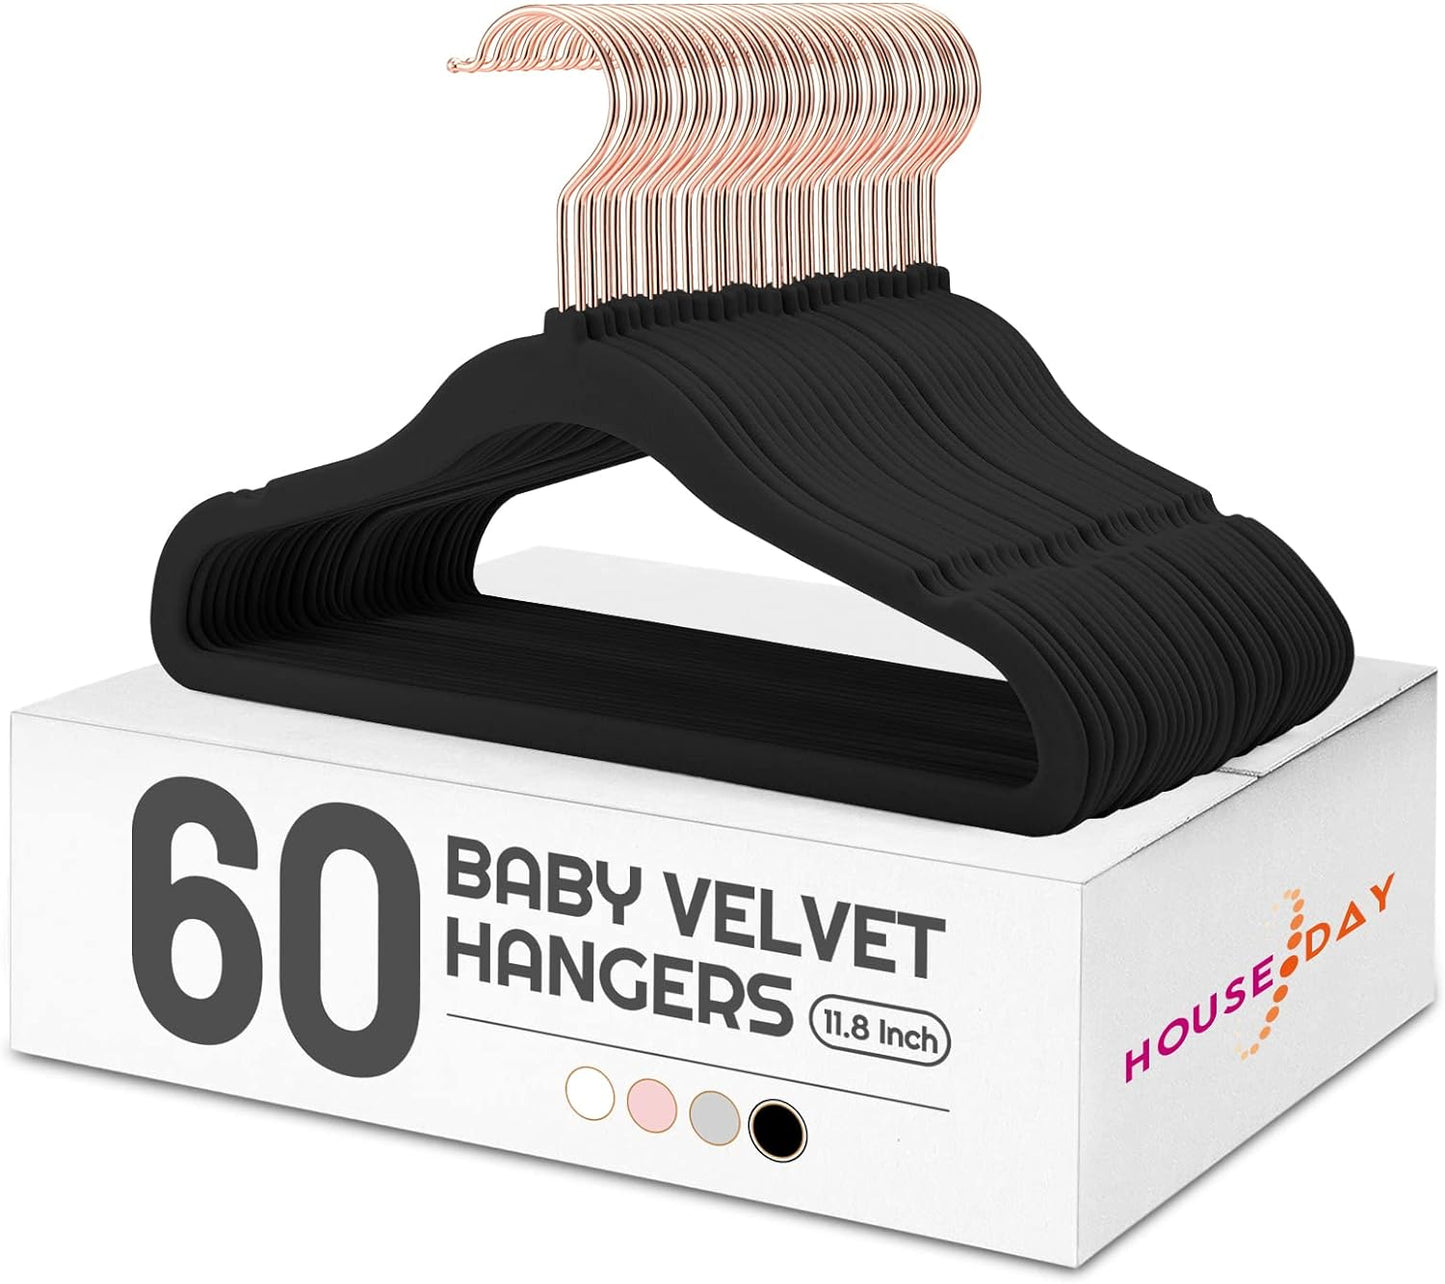 HOUSE DAY 11.8 inch Velvet Baby Hangers 60 Pack